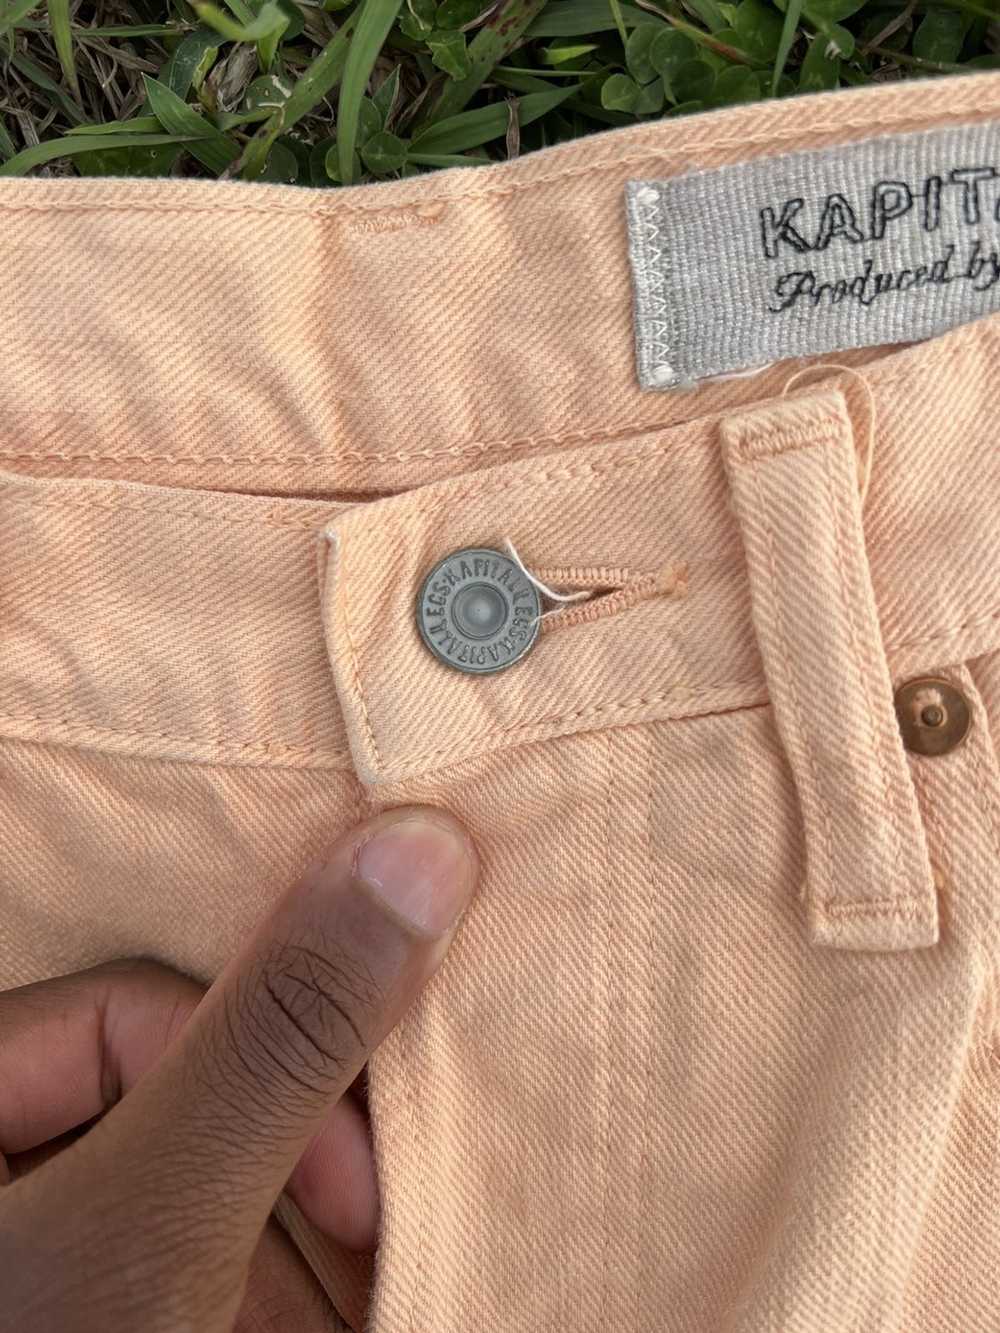 Kapital Kapital Orange Denim Jeans - image 8